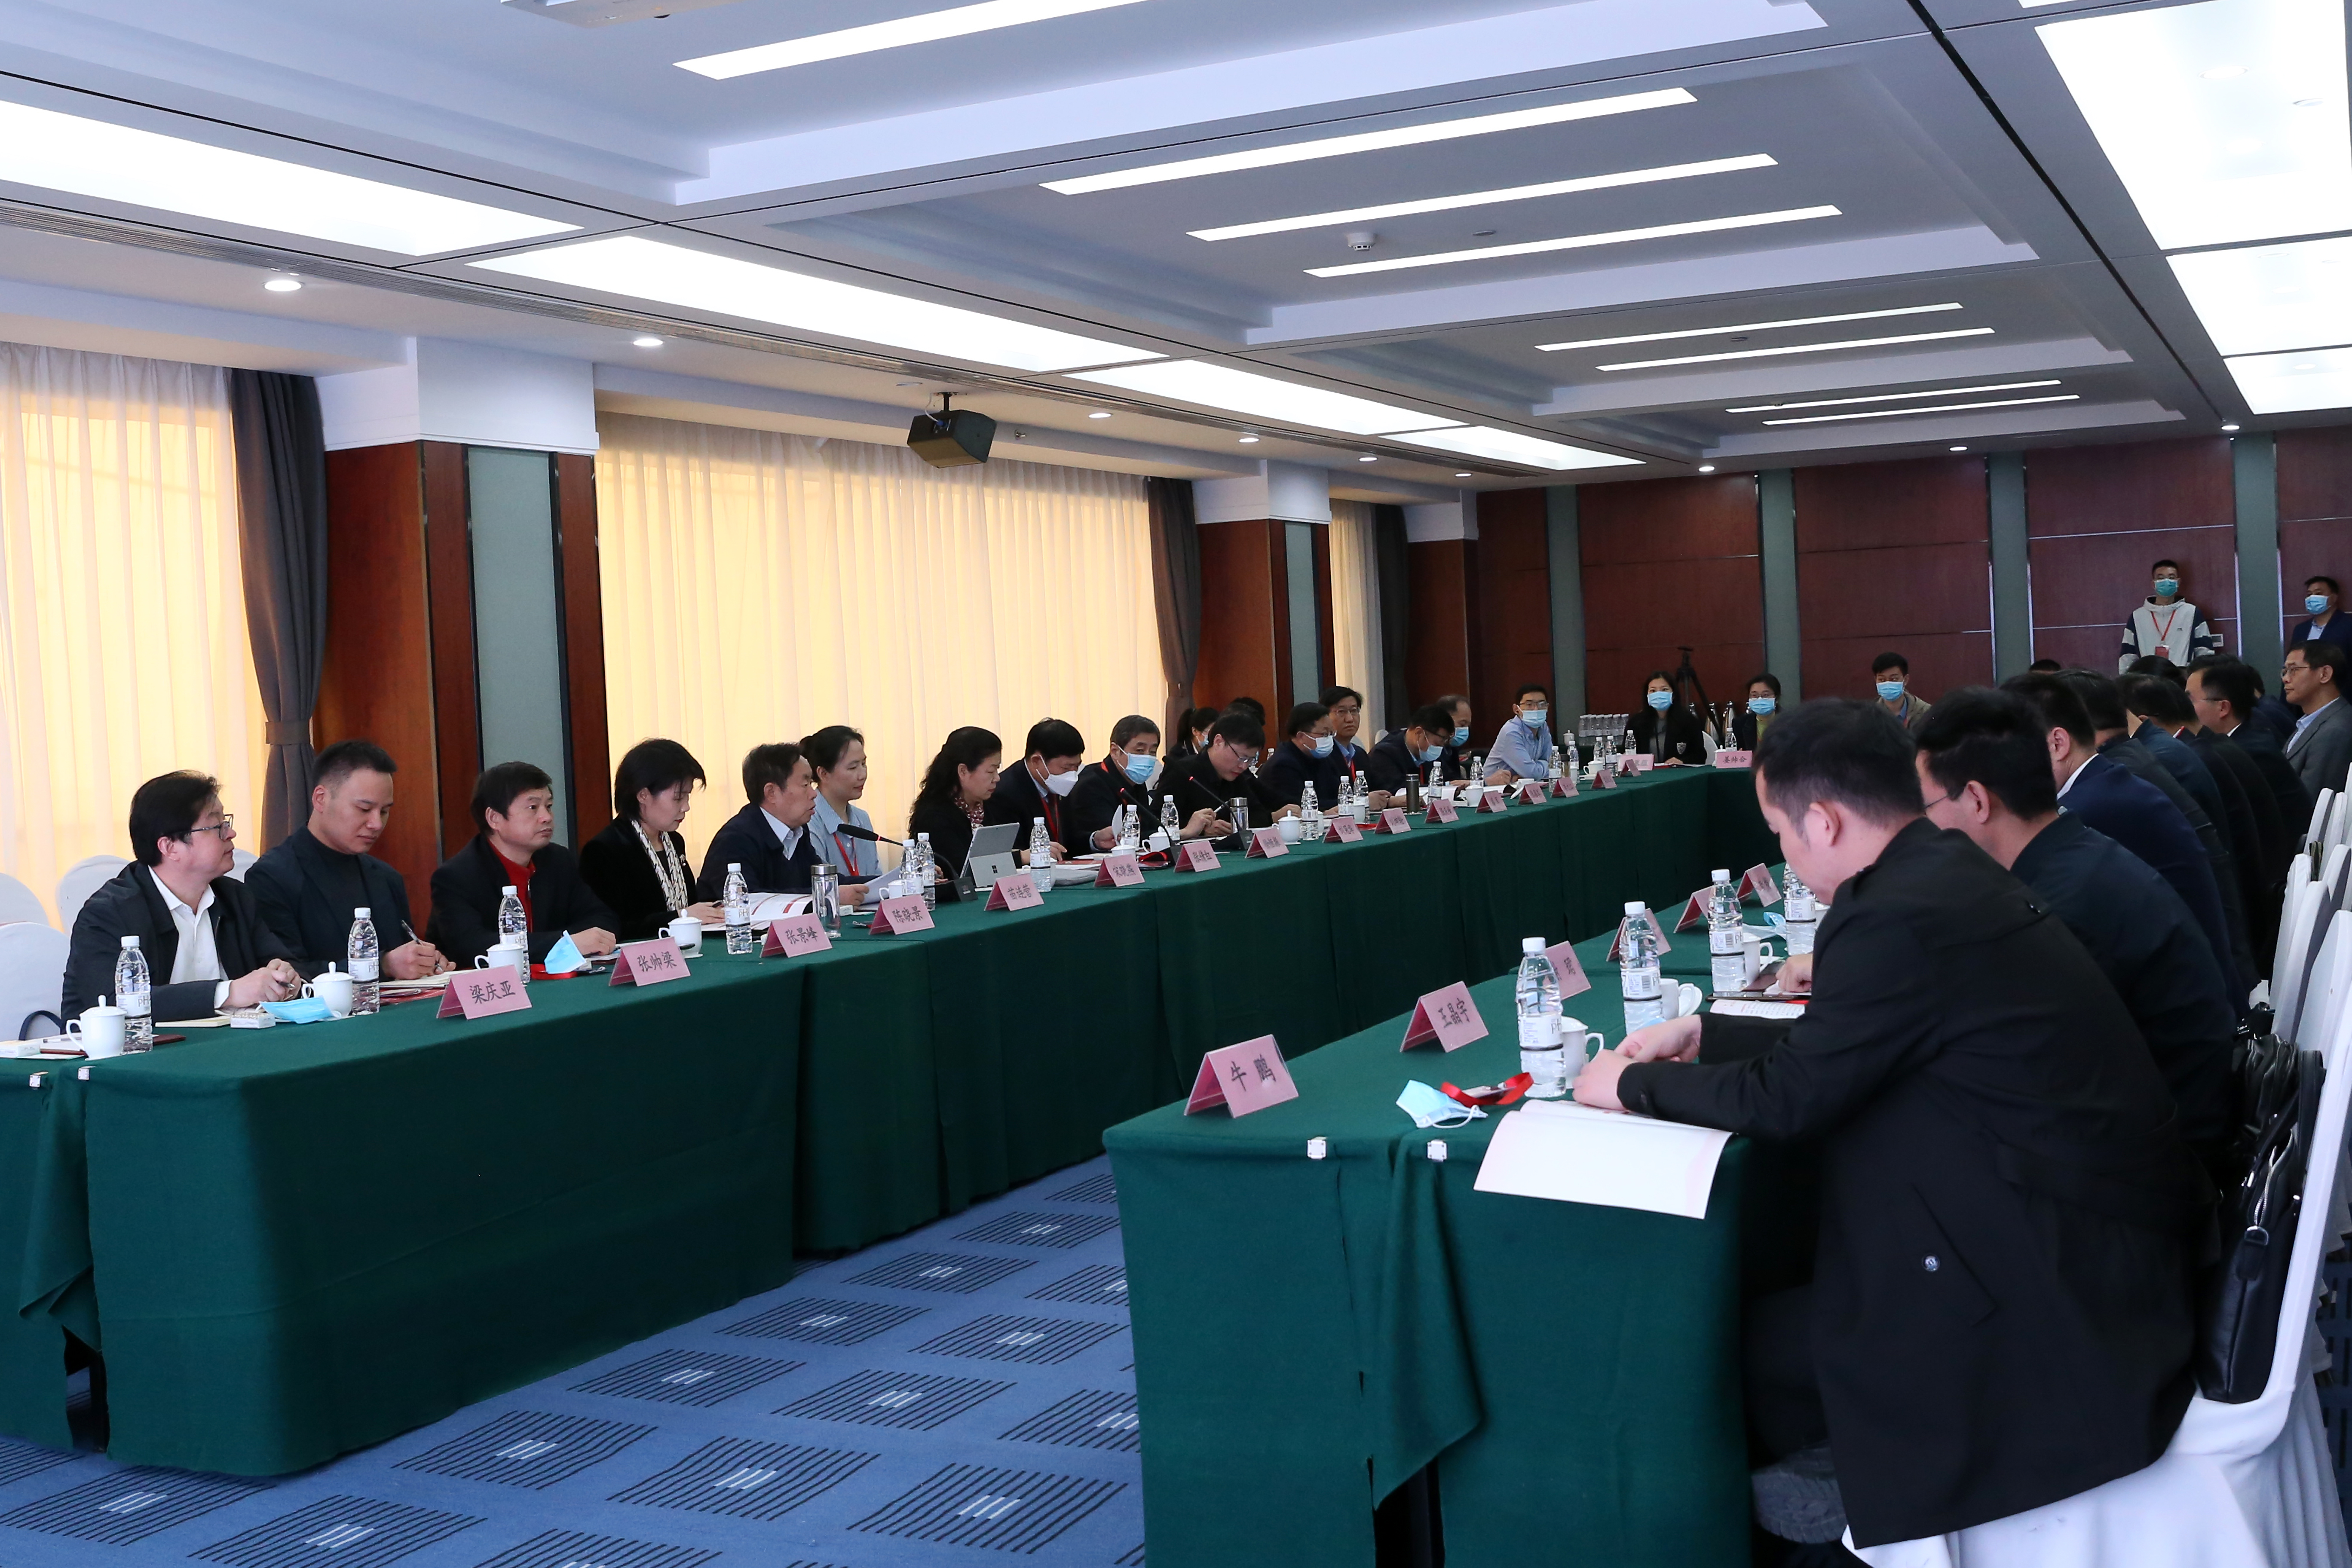 郑州大学举办“加快完善法学教育体系、推动一流法学学科建设”研讨会